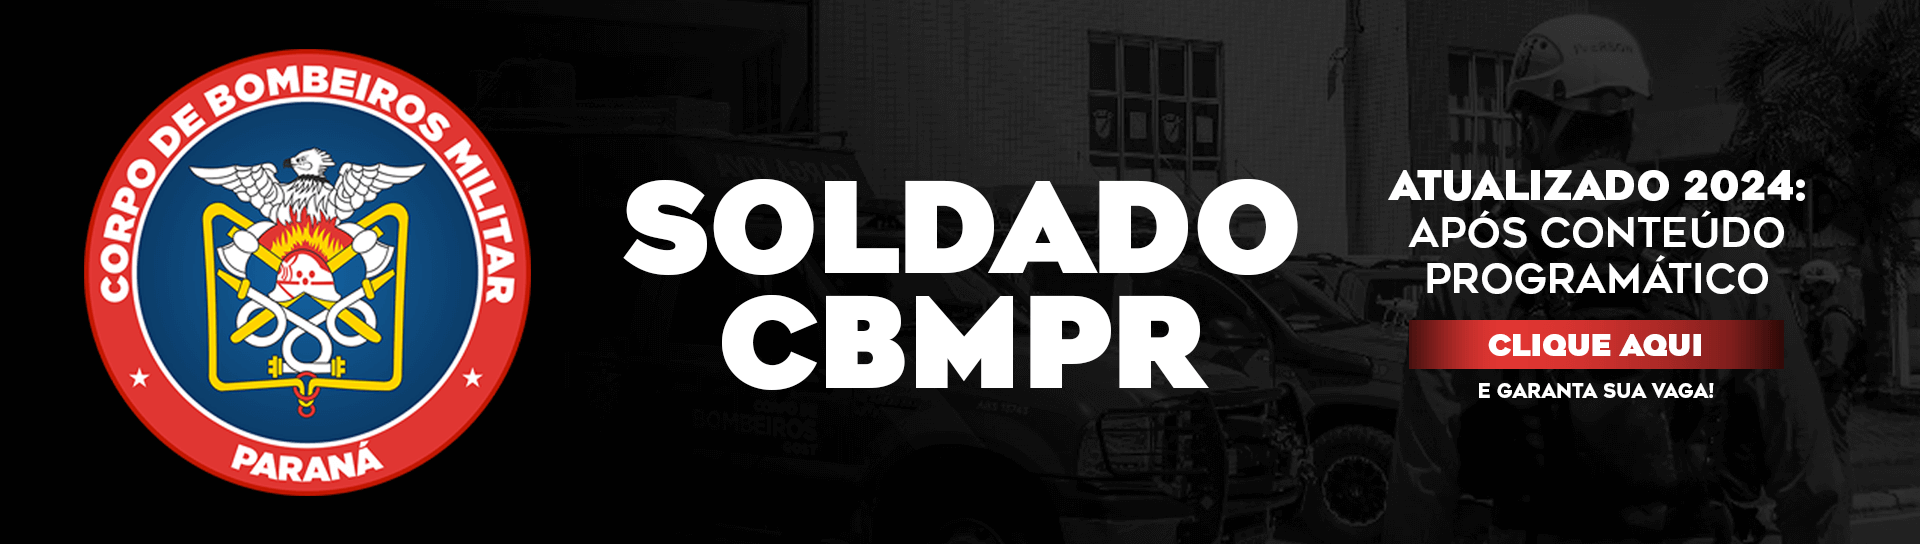 Soldado CBMPR